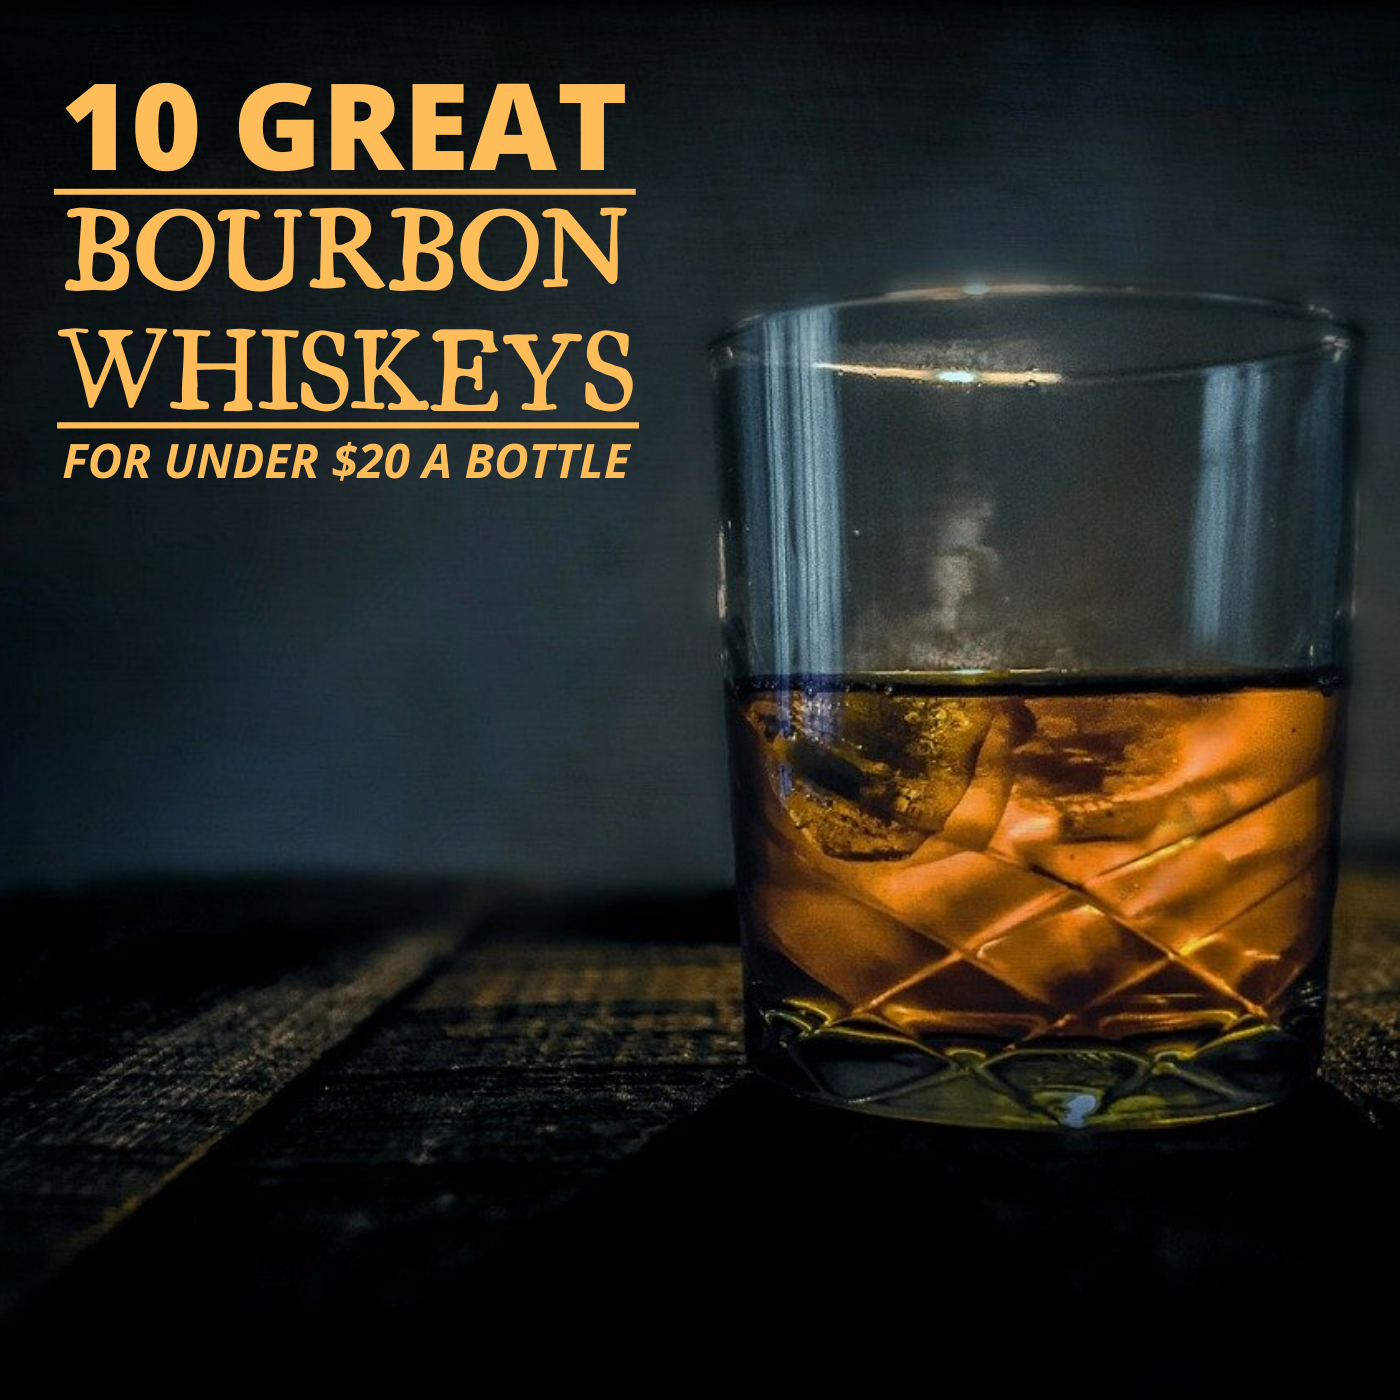 The 10 Best Bourbon Whiskeys for Under $20